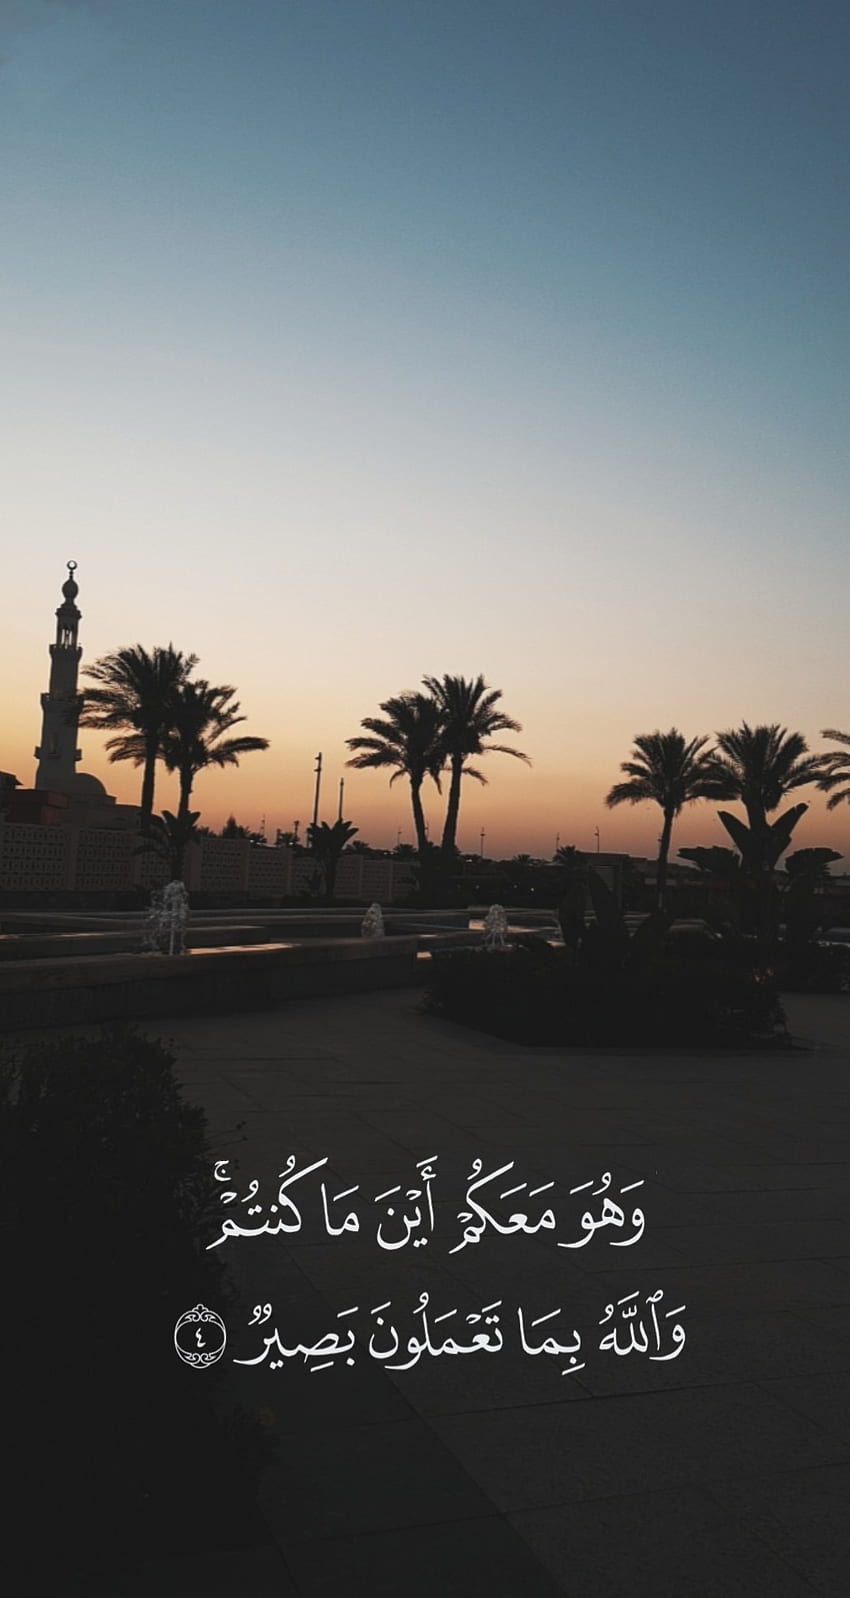 Islam, perasaan senang, langit, masjid, kutipan, alam, telapak tangan, Quran, pemandangan wallpaper ponsel HD